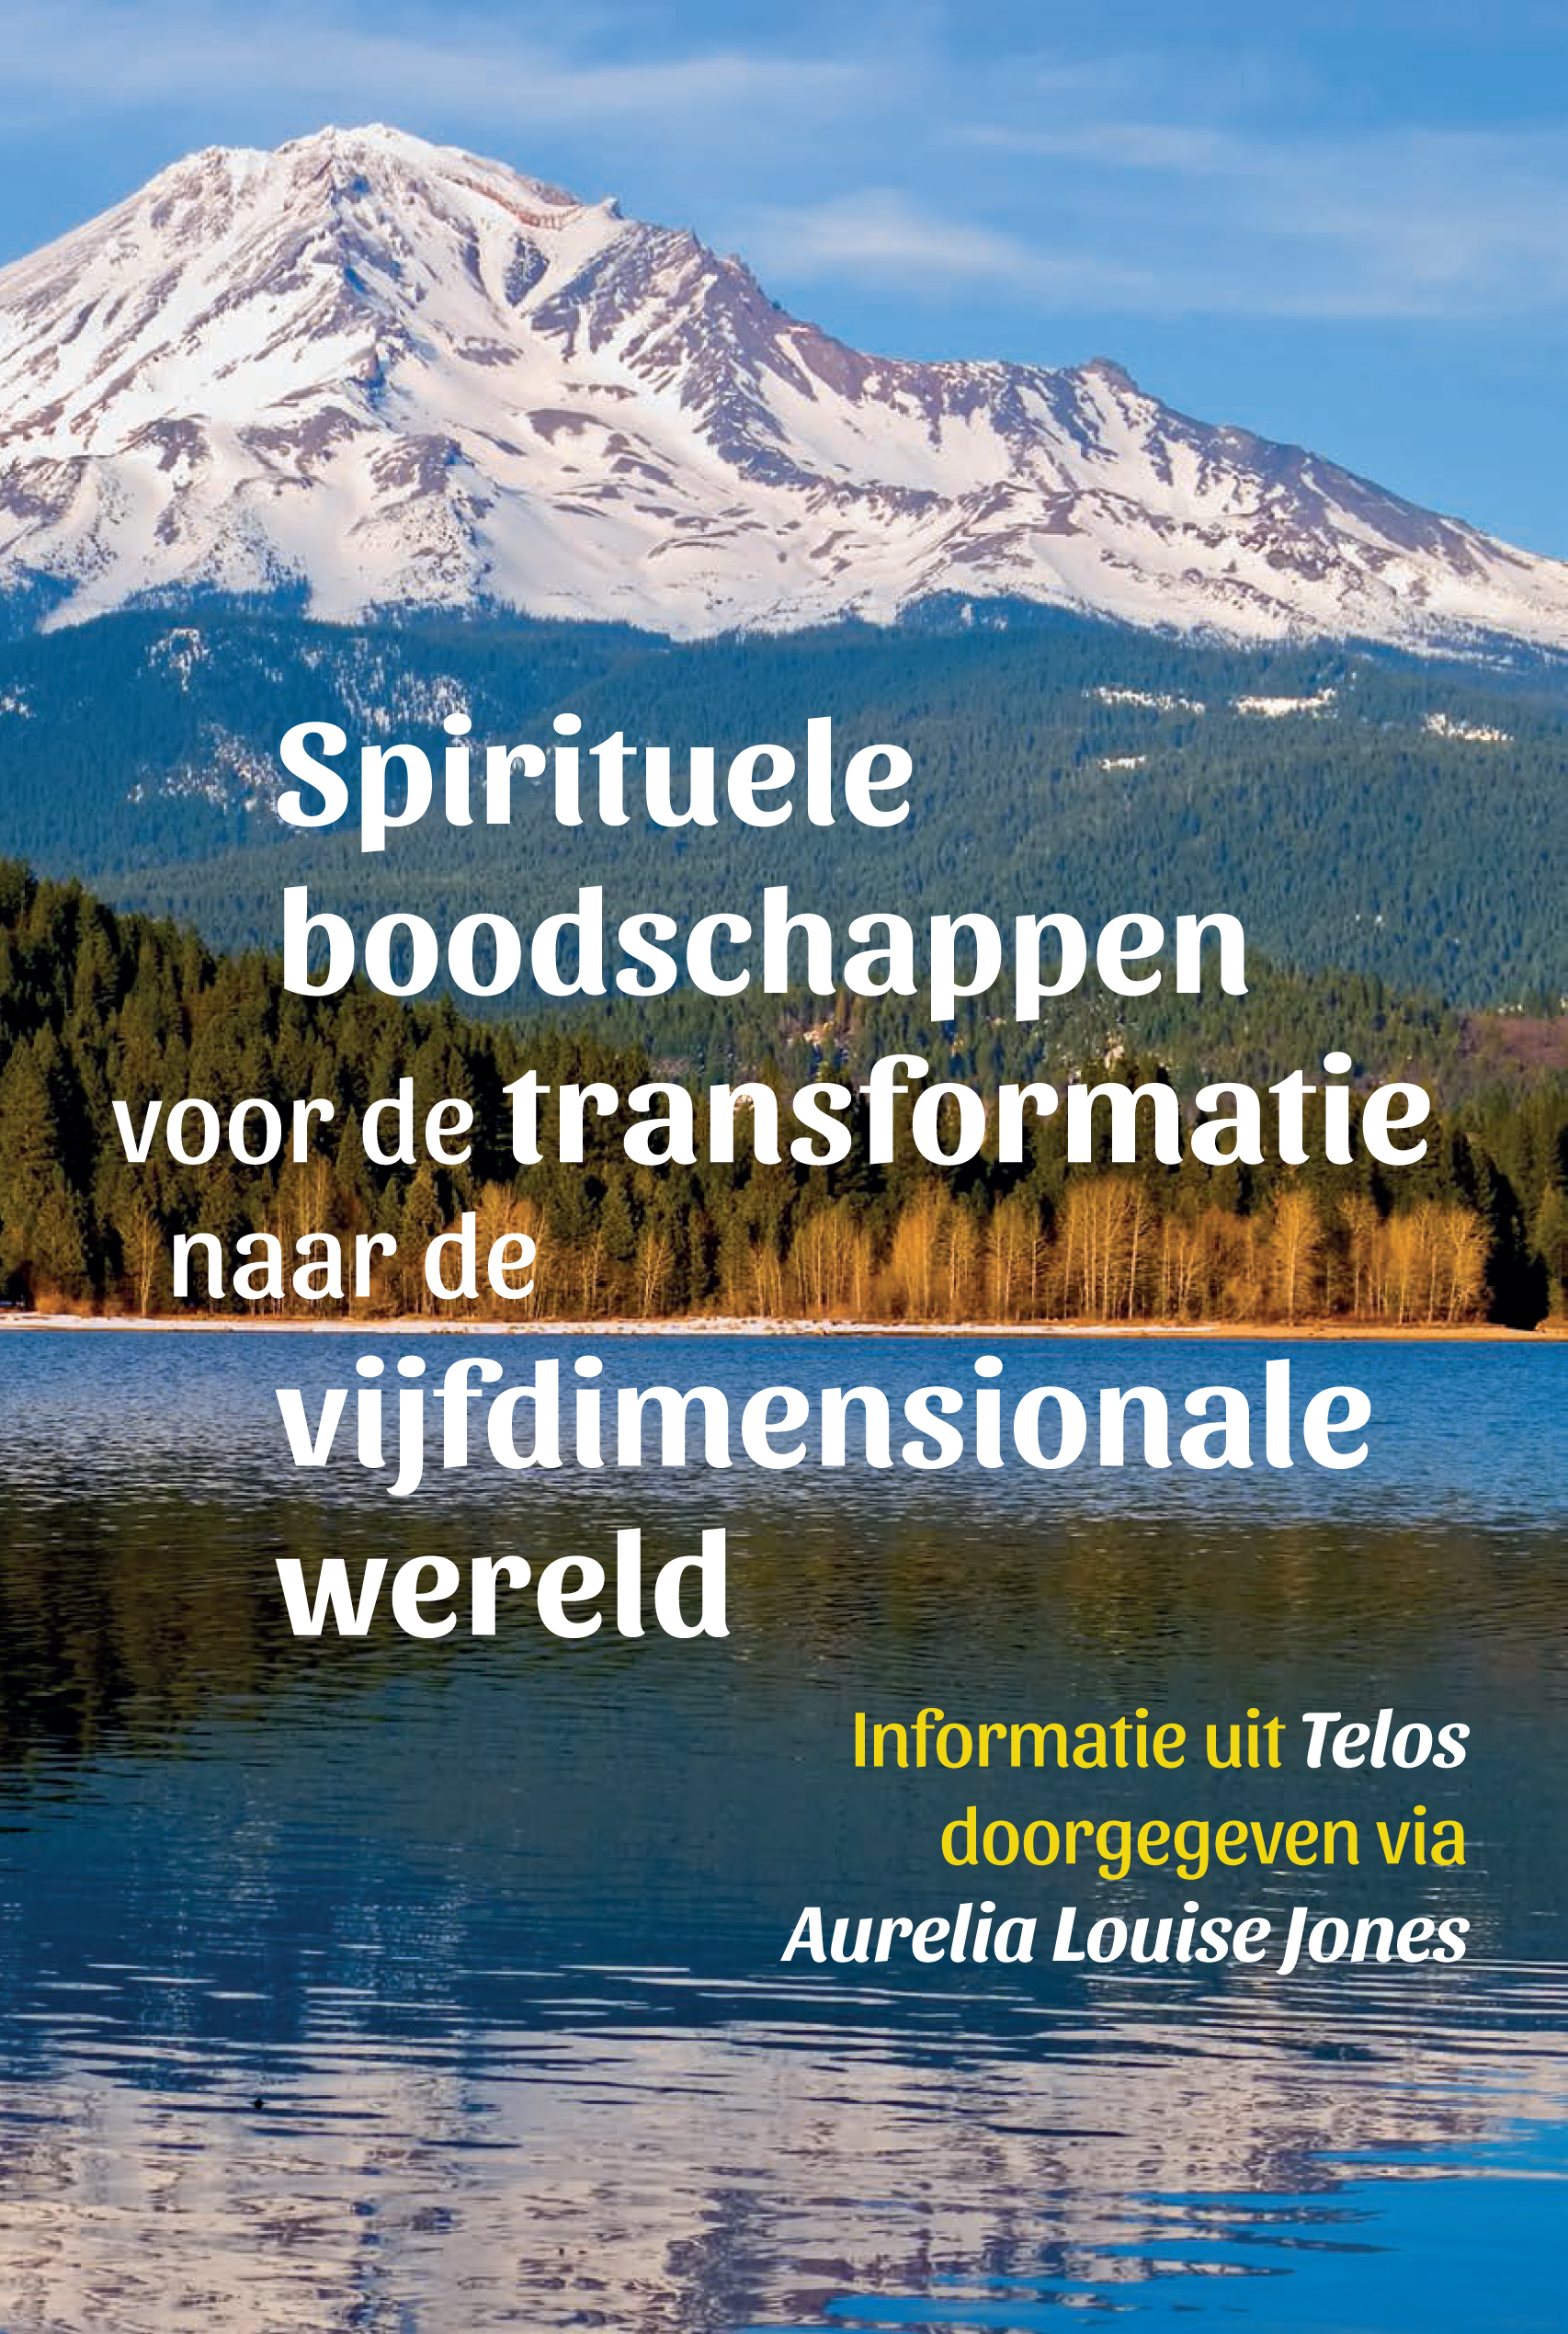 Spirituele boodschappen voor de transformatie naar de vijfdimensionale wereld